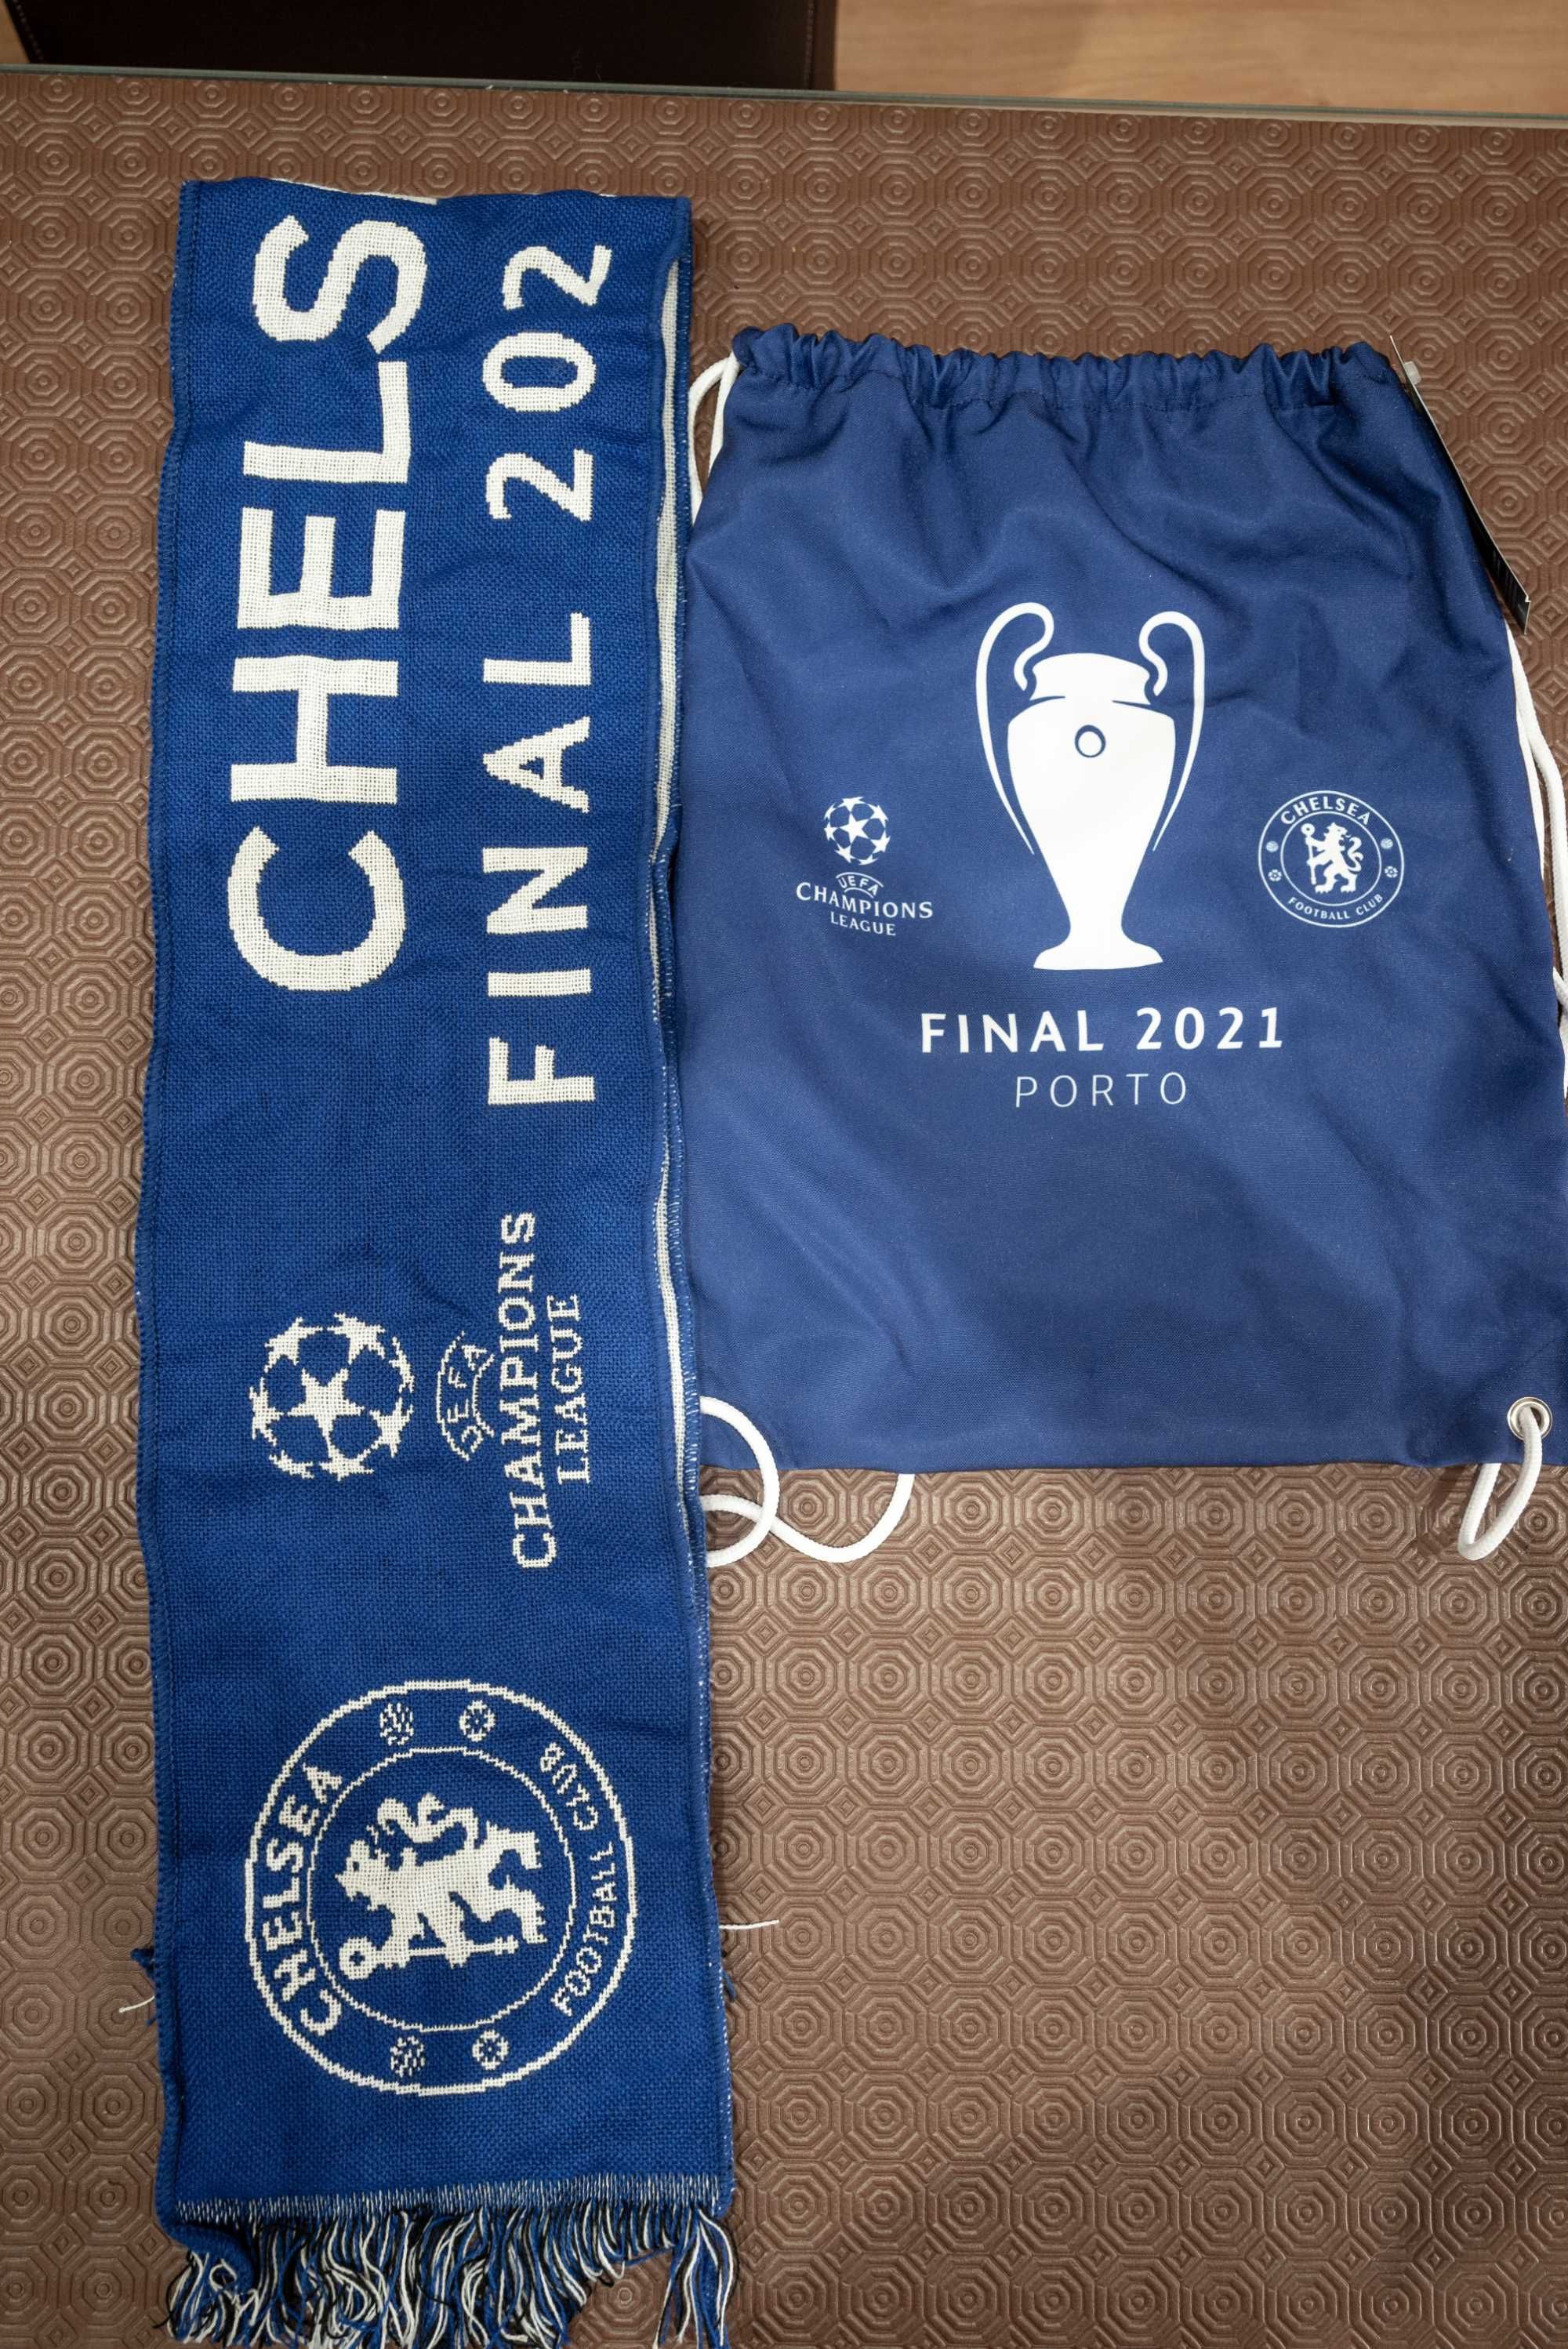 Cachecol do Chelsea da Final da Liga dos Campeões no Porto em 2021.